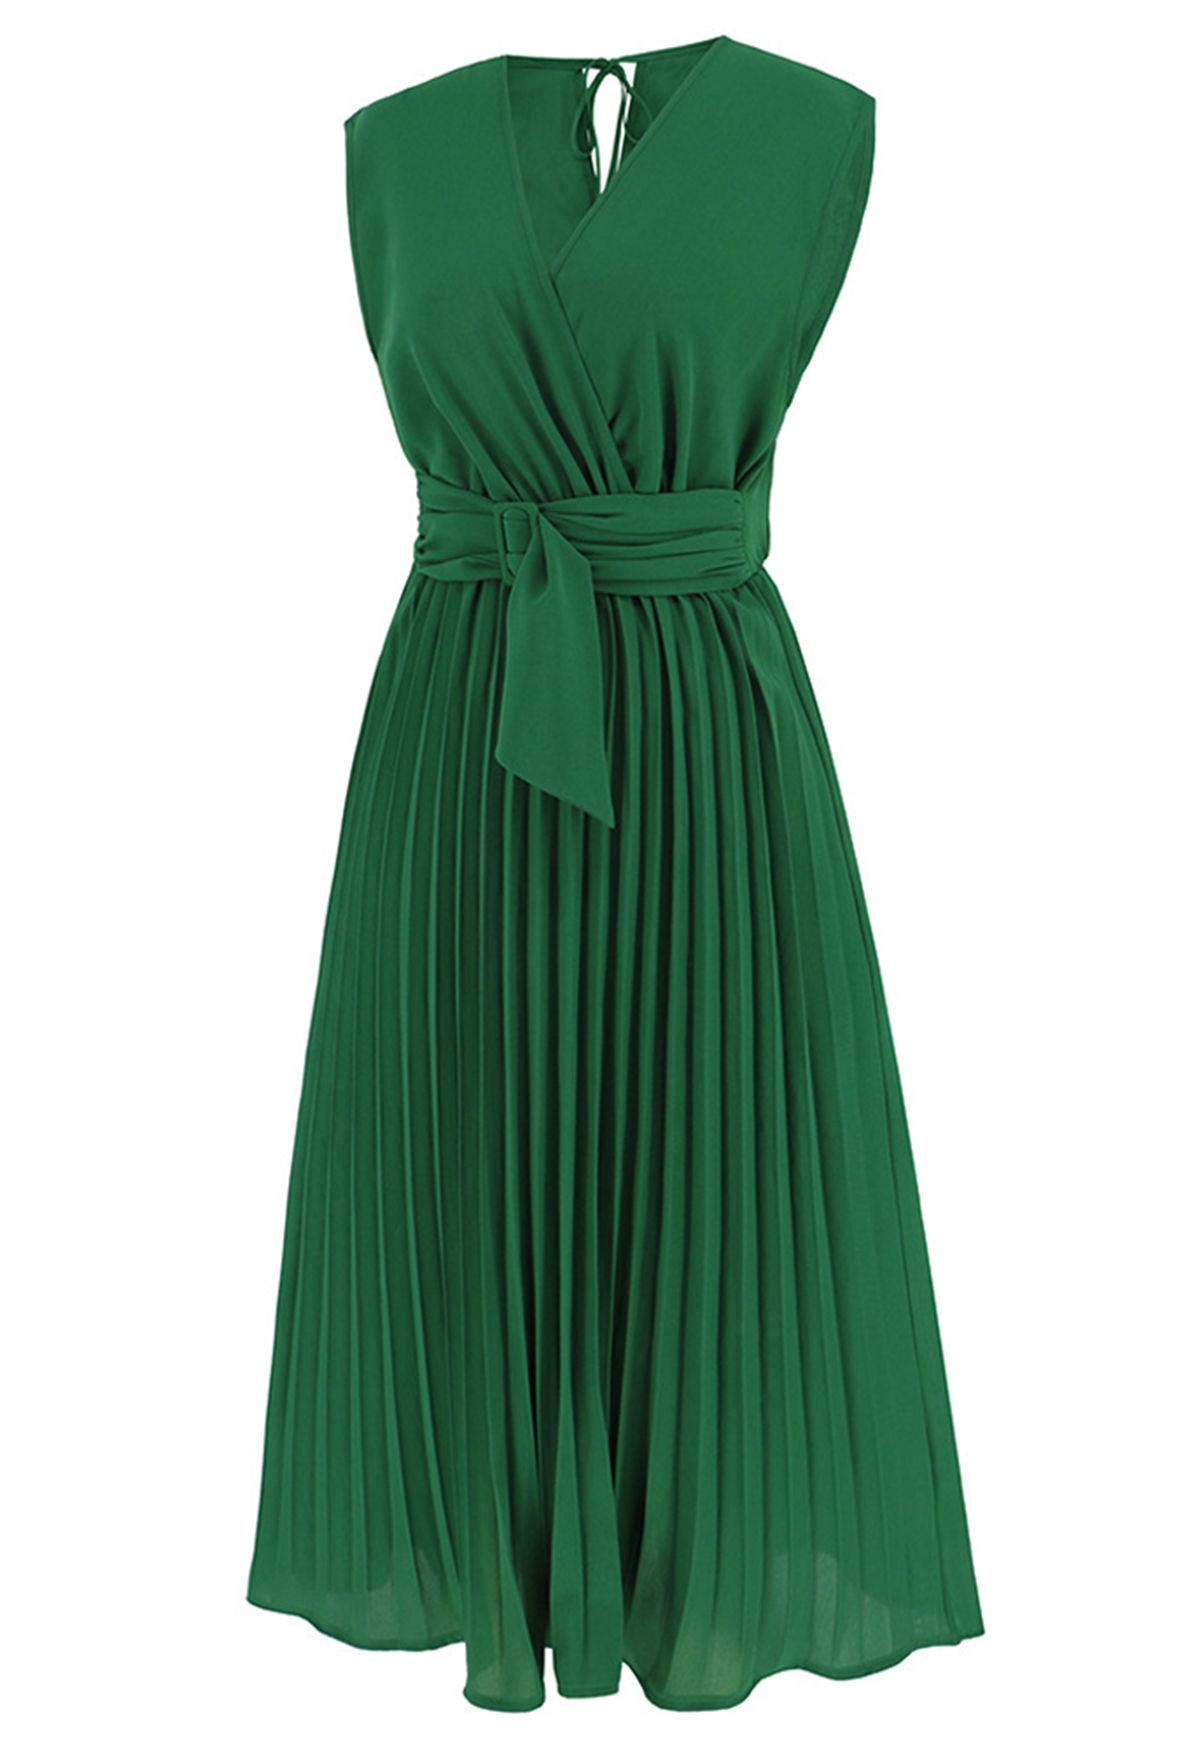 Schärpenverziertes, plissiertes, ärmelloses Wickelkleid in Grün